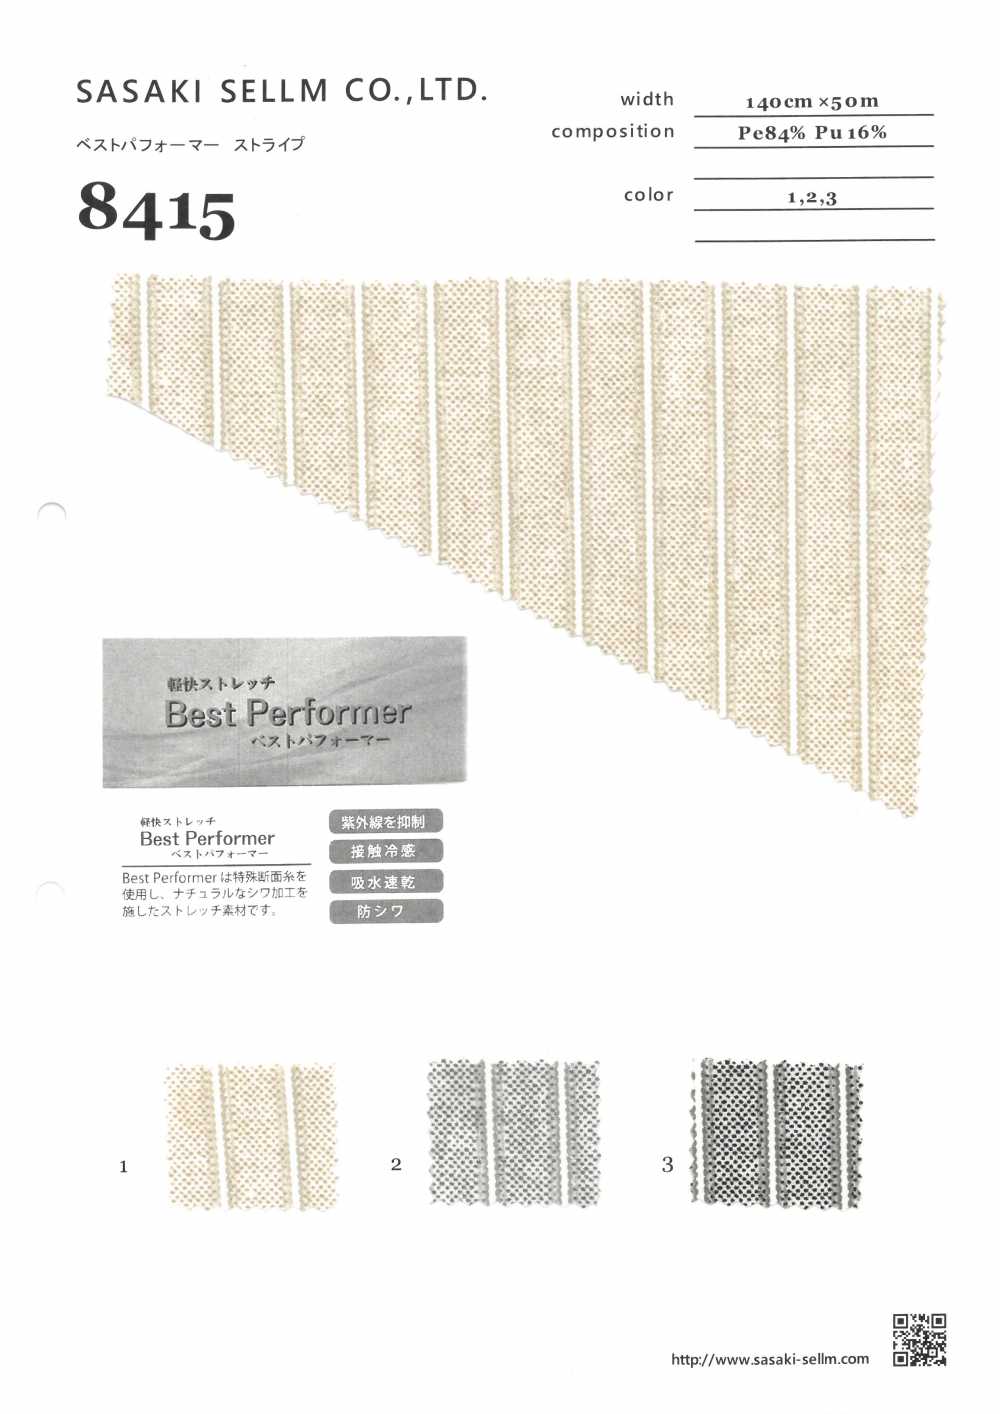 8415 Weste Performer Streifen[Textilgewebe] SASAKISELLM